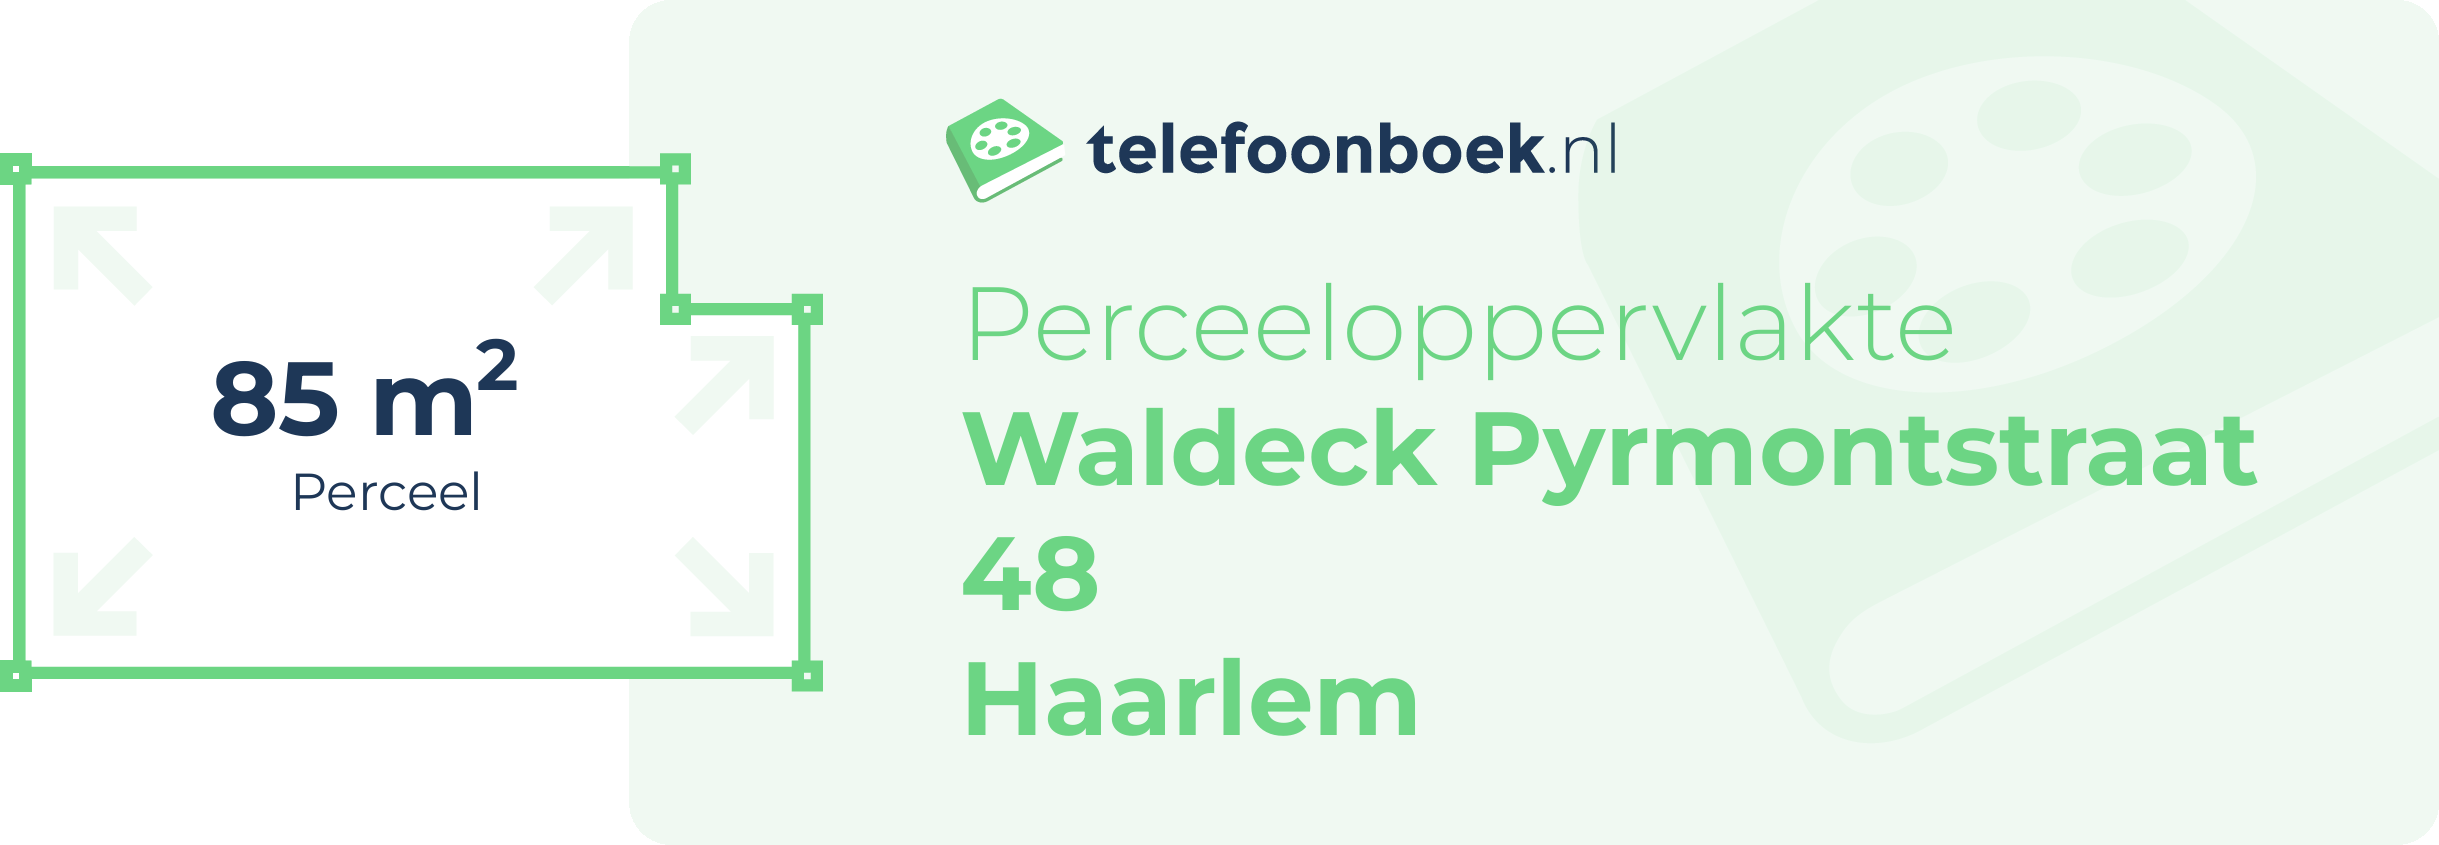 Perceeloppervlakte Waldeck Pyrmontstraat 48 Haarlem